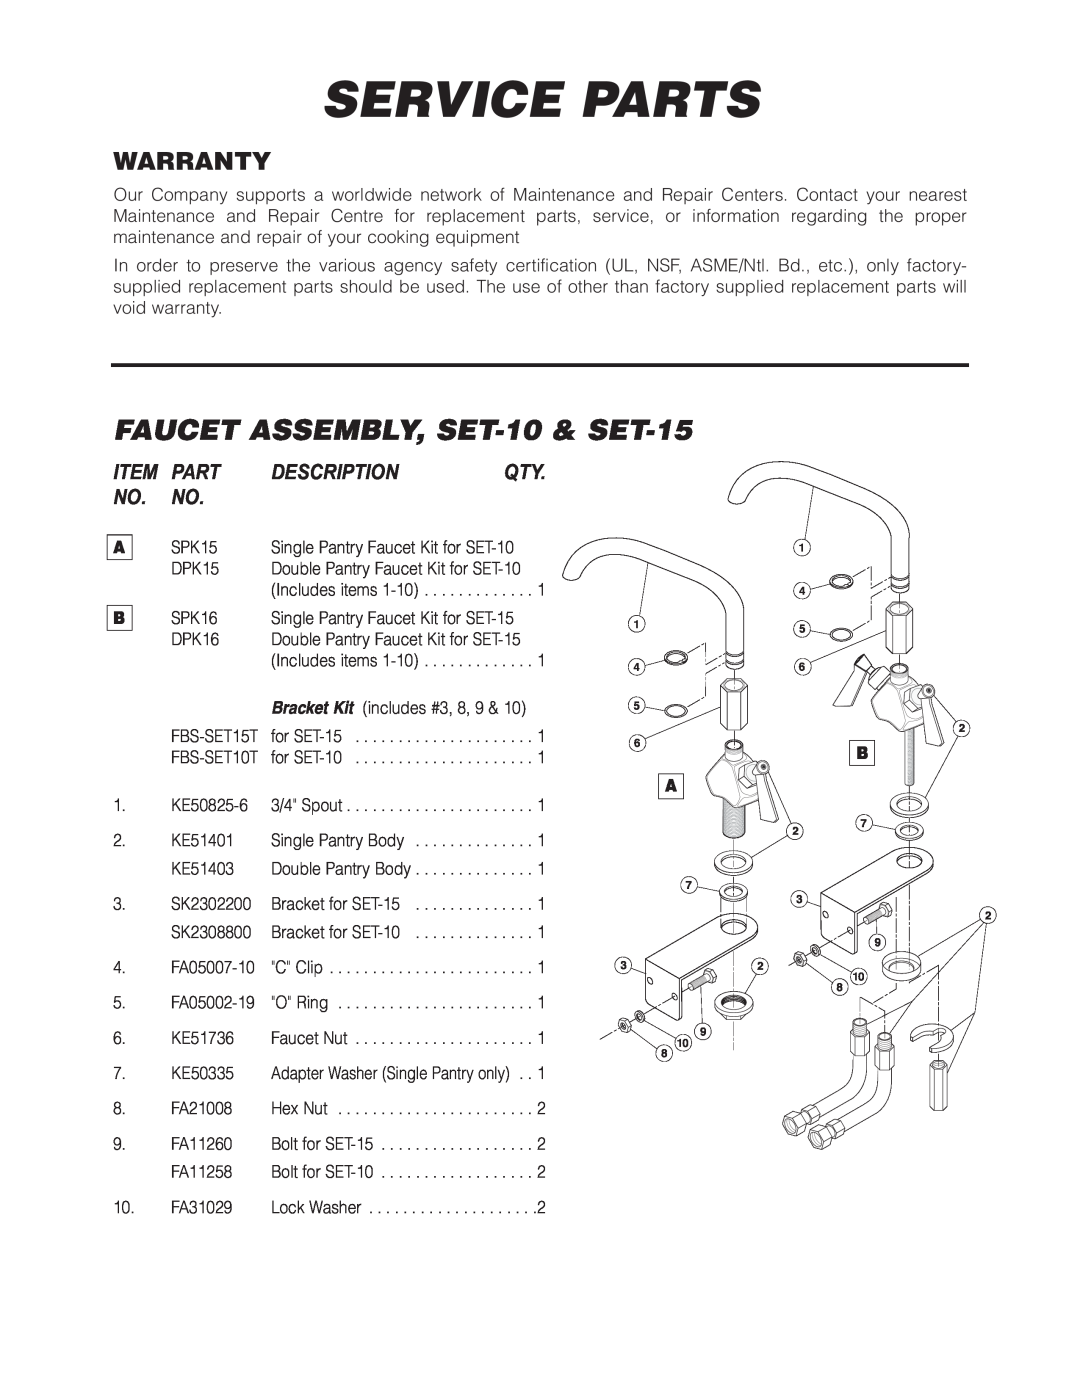 Cleveland Range manual Service Parts, FAUCET ASSEMBLY,SET-10 & SET-15, Warranty, Item Part Description Qty No. No 